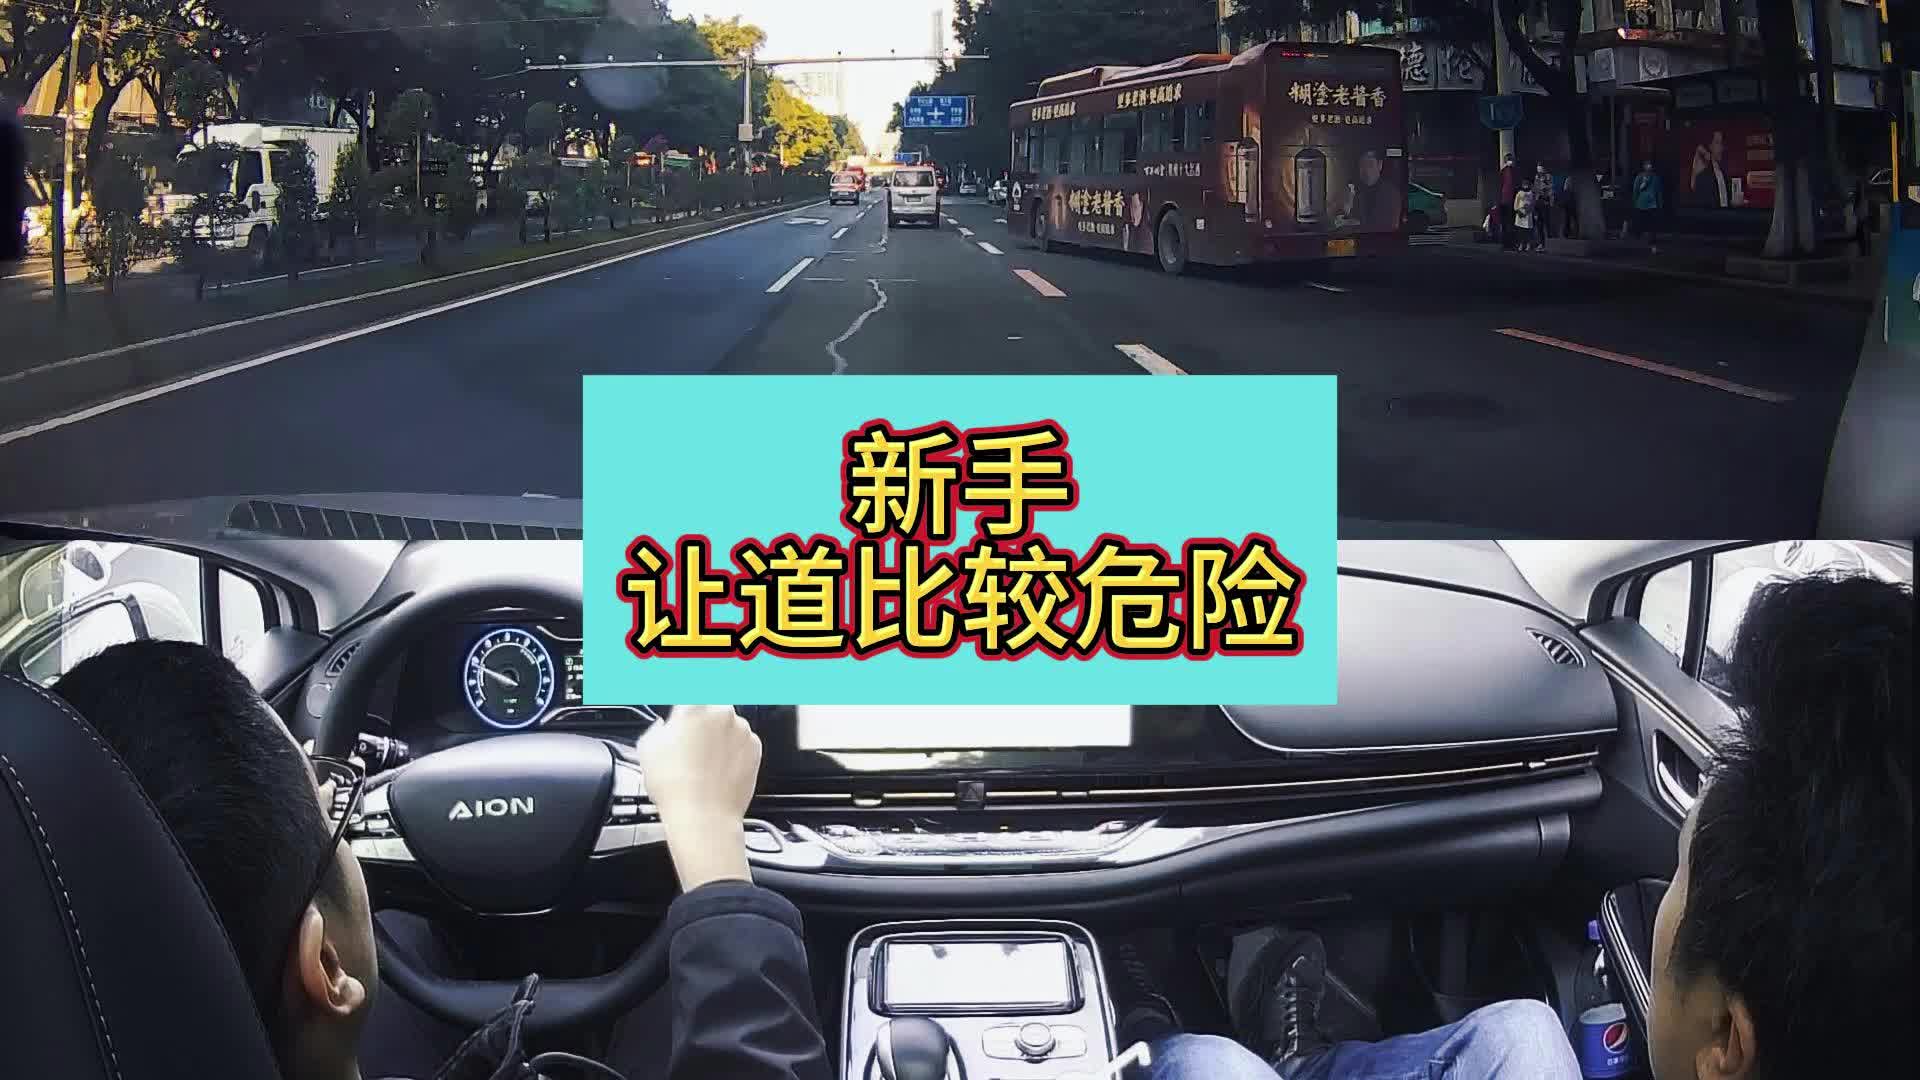 方向，打多少要知道-广州新起点陪驾陪练-广州新起点陪驾陪练-哔哩哔哩视频